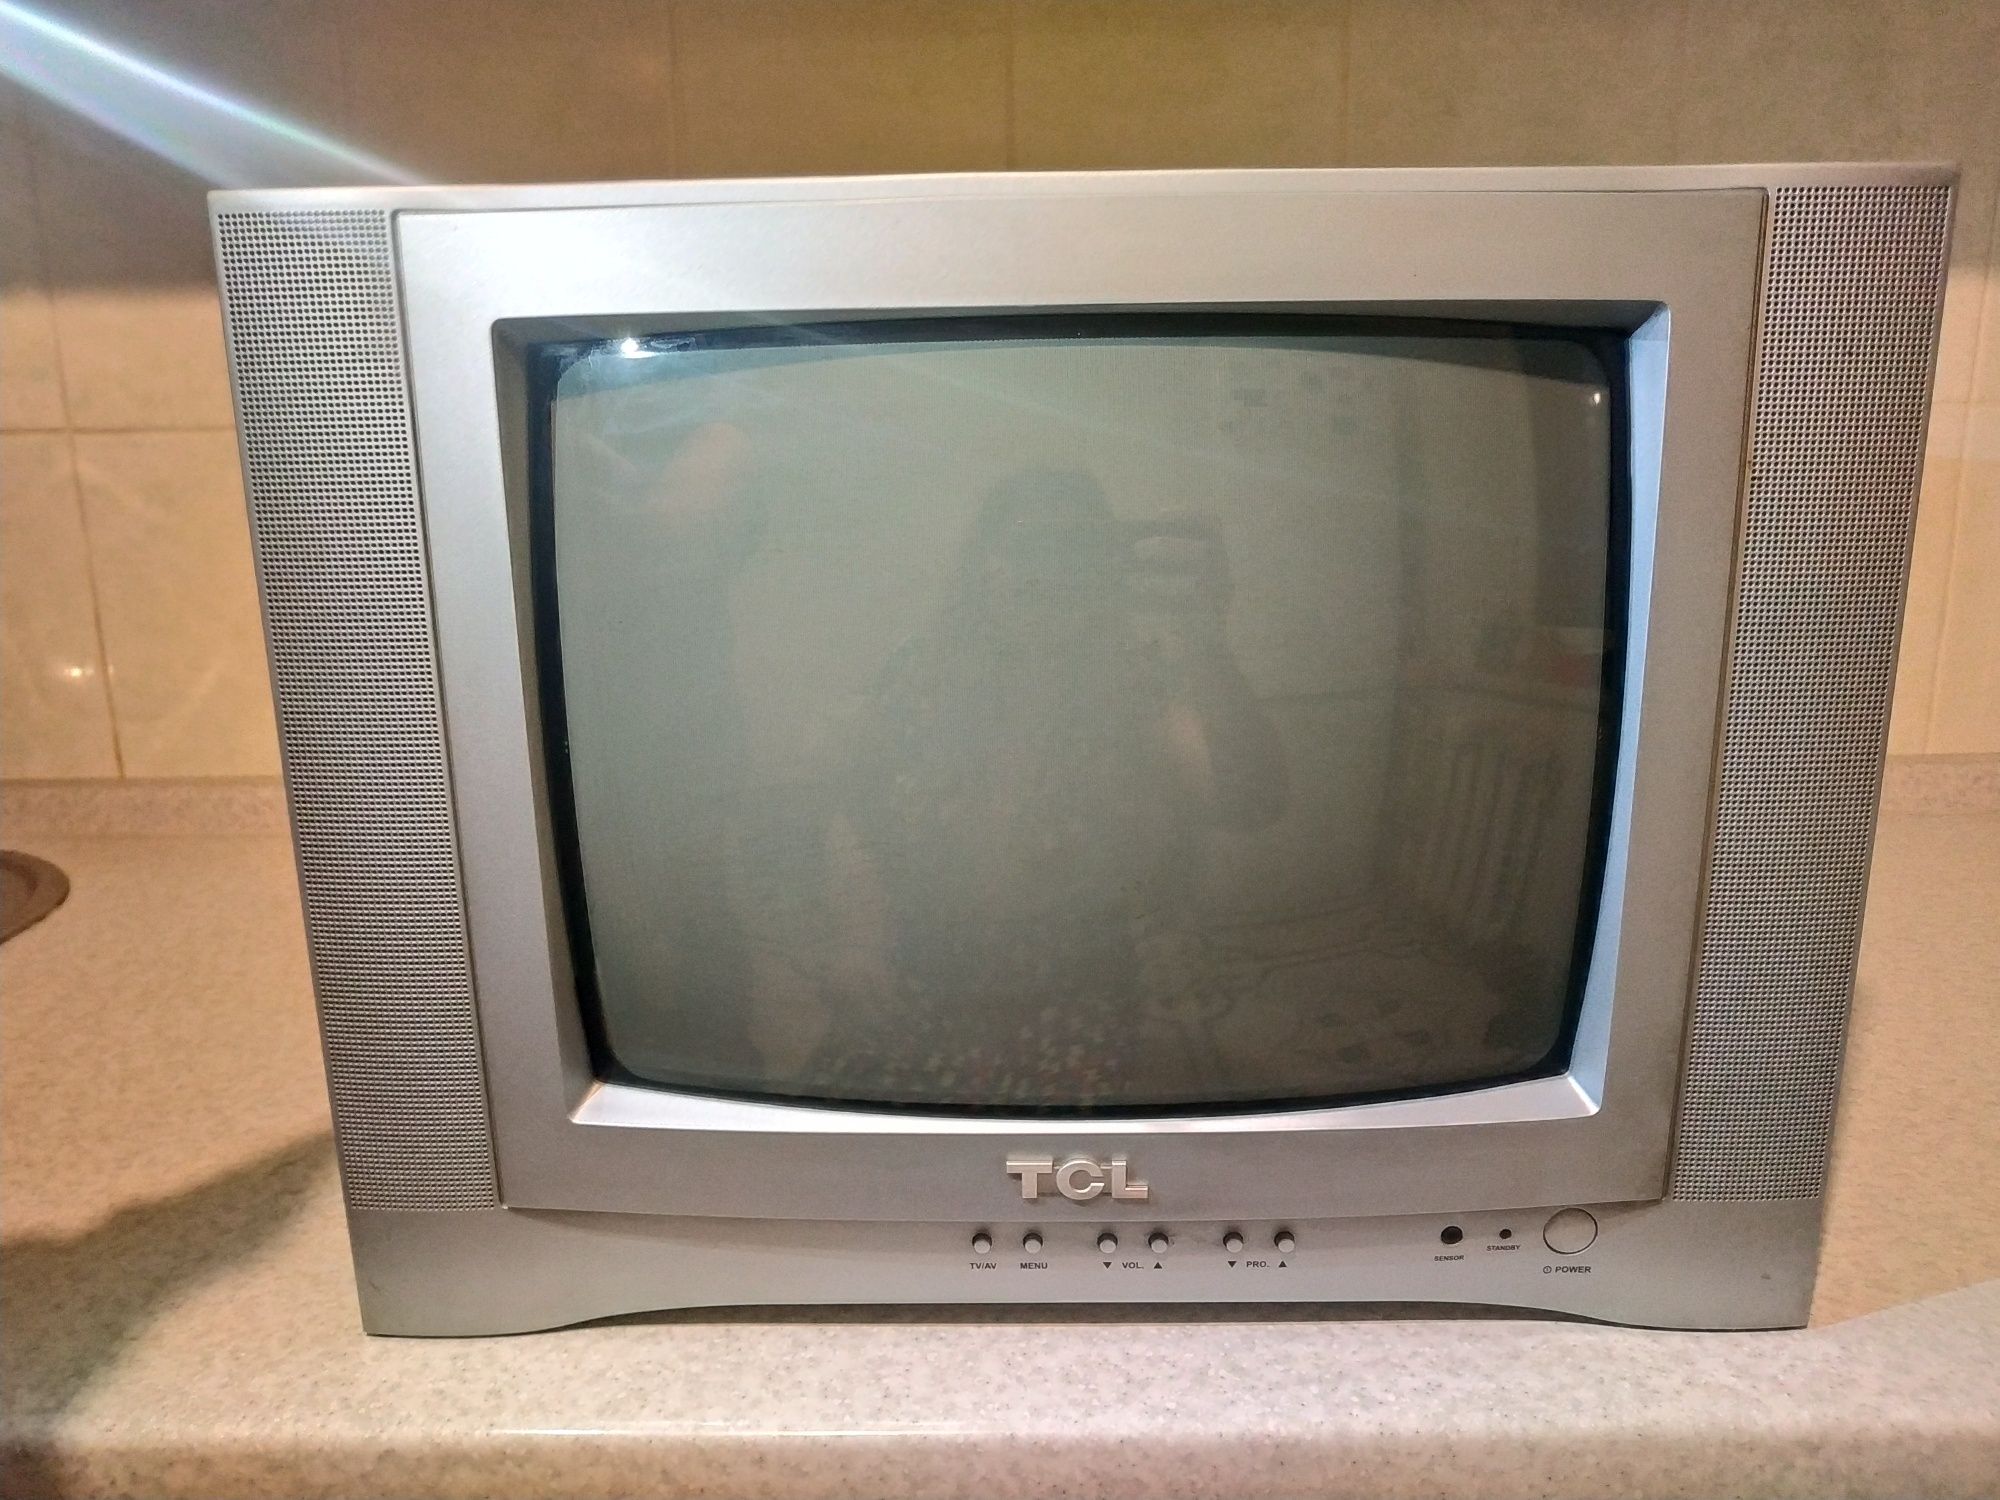 Телевизор TCL 14276, нерабочий